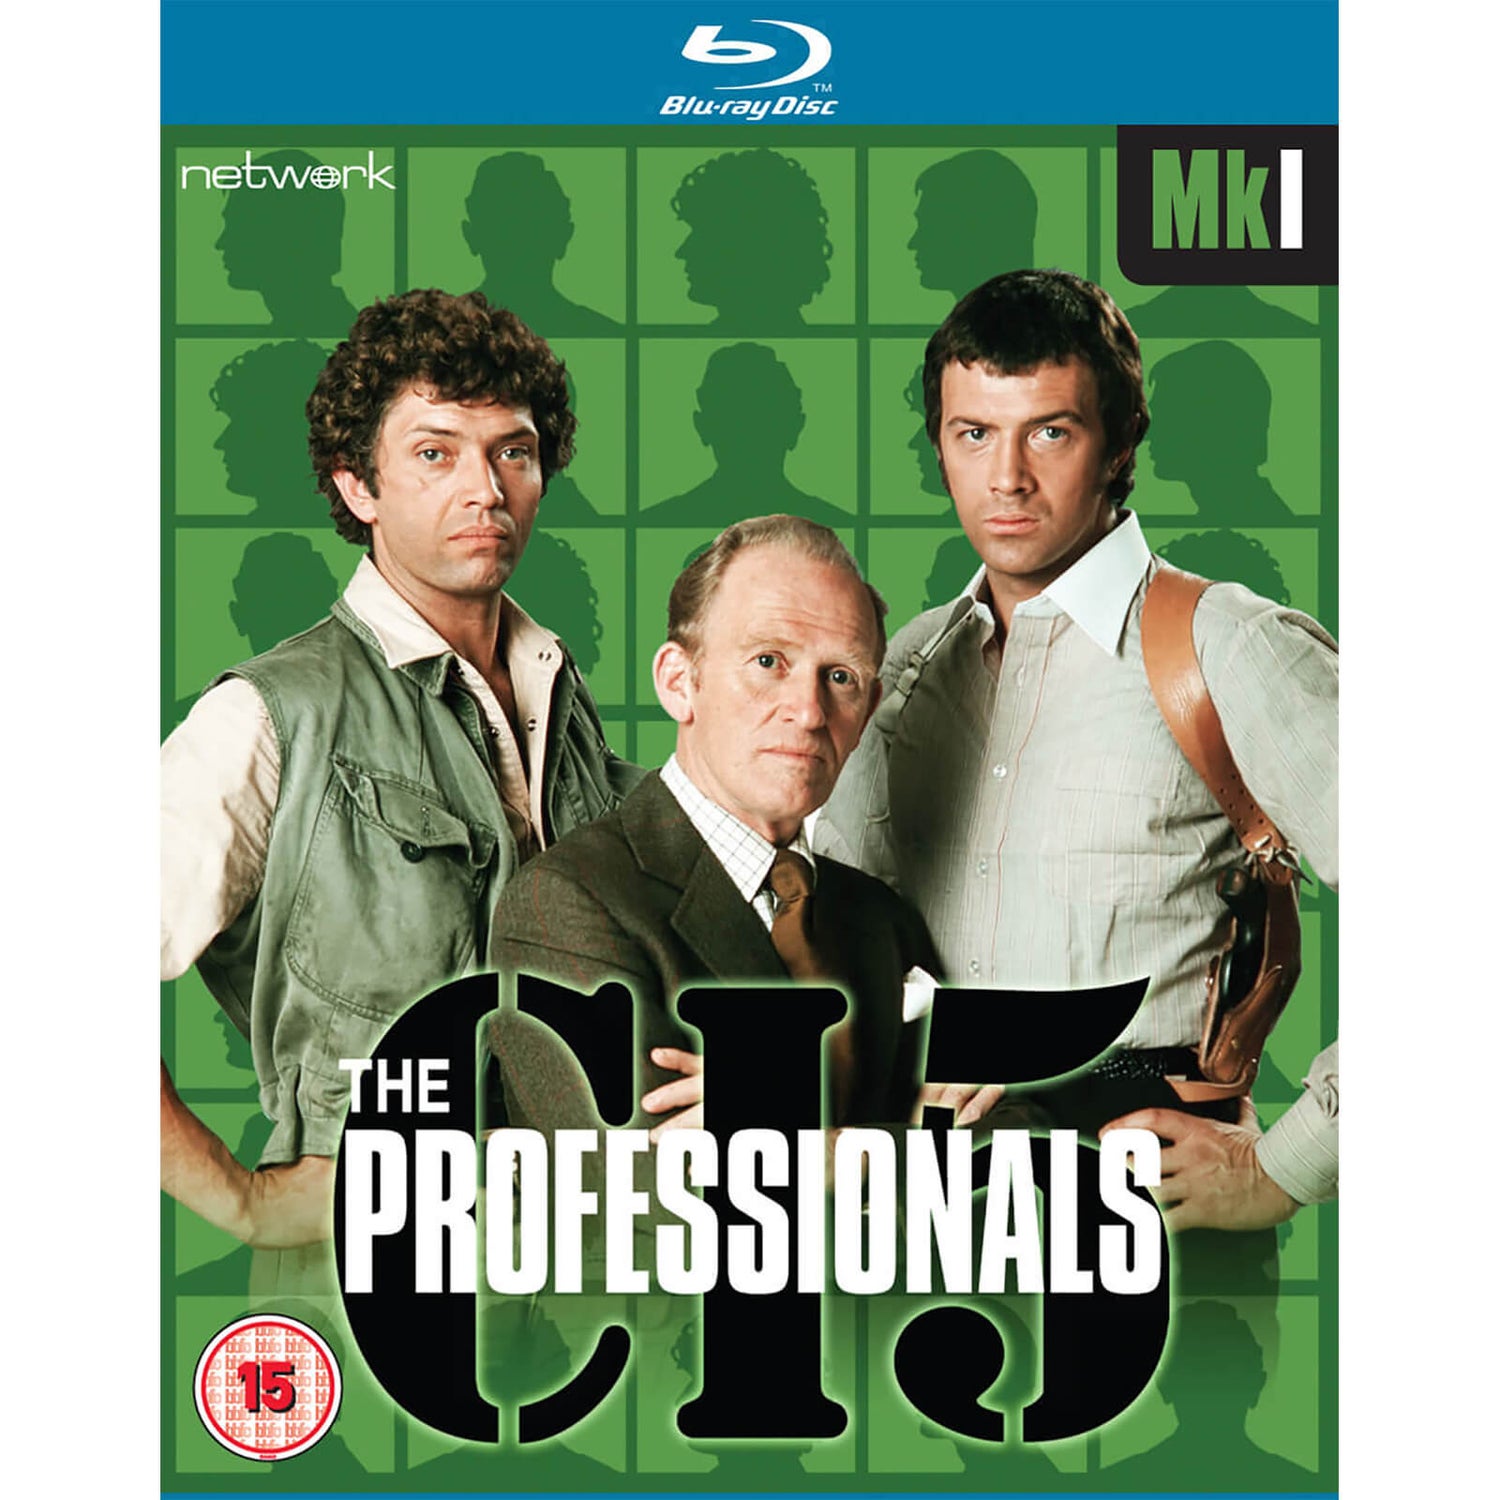 The Professionals: Mk I